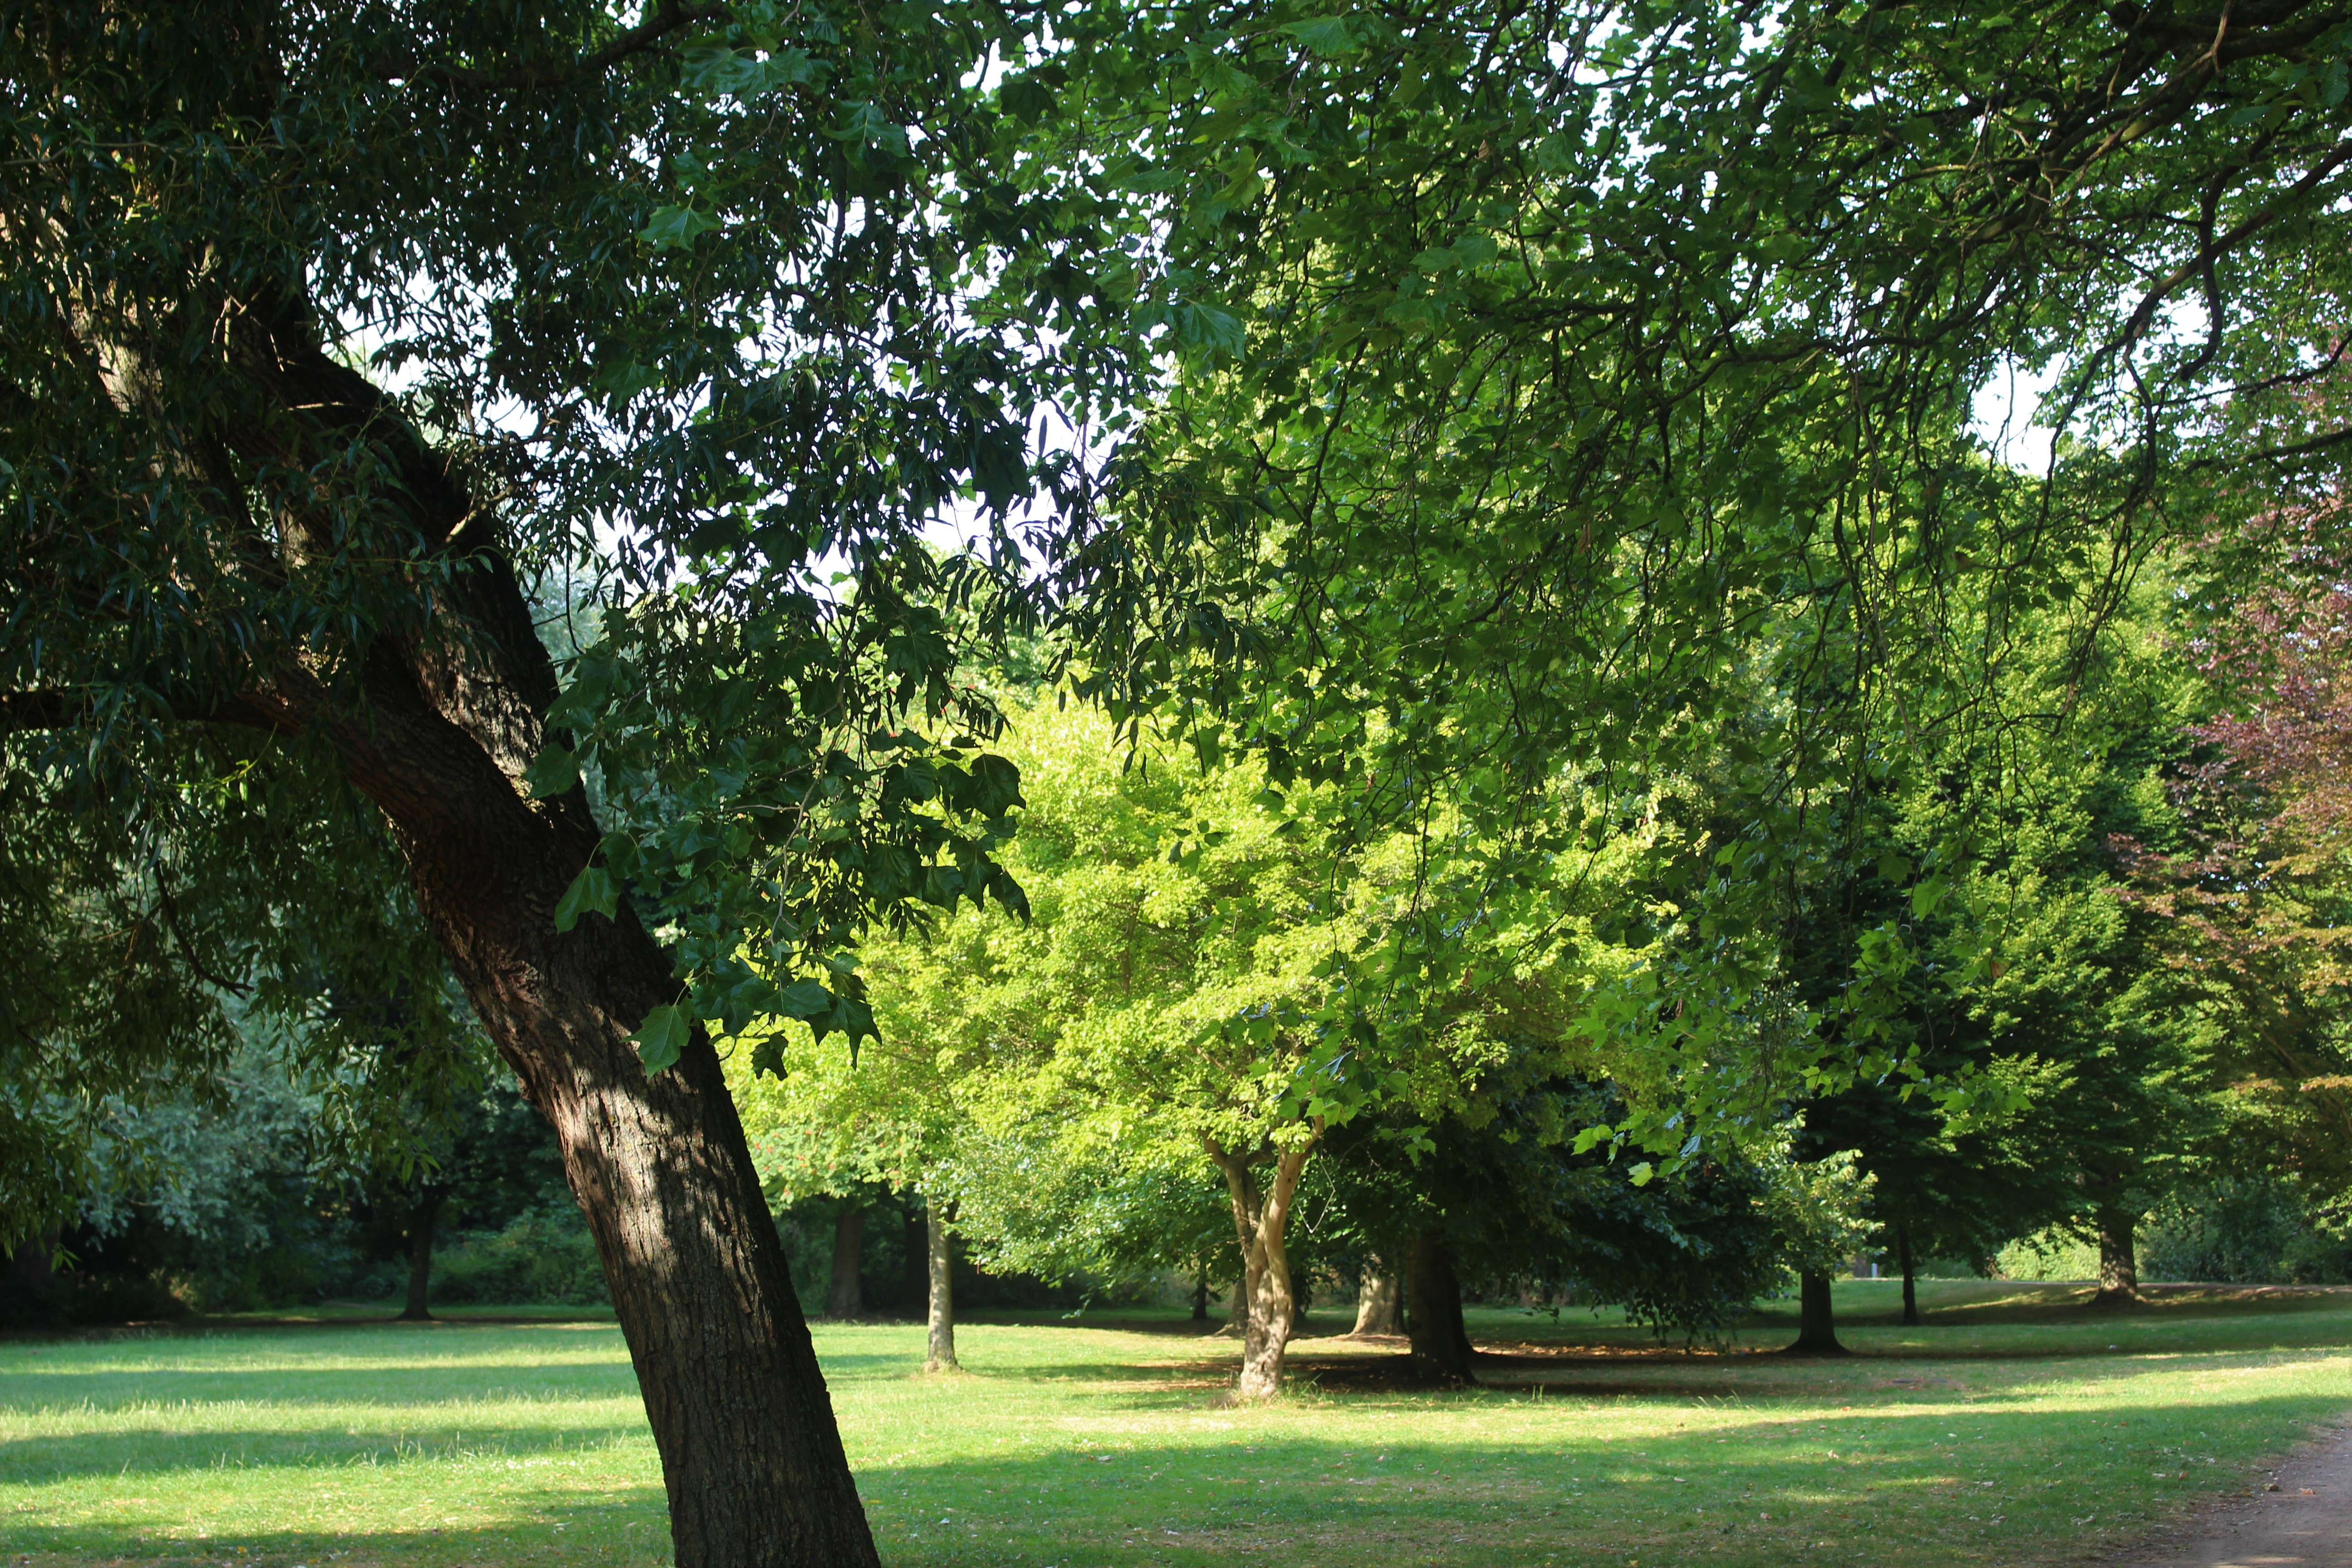 Greenery in Queen Elizabeth park